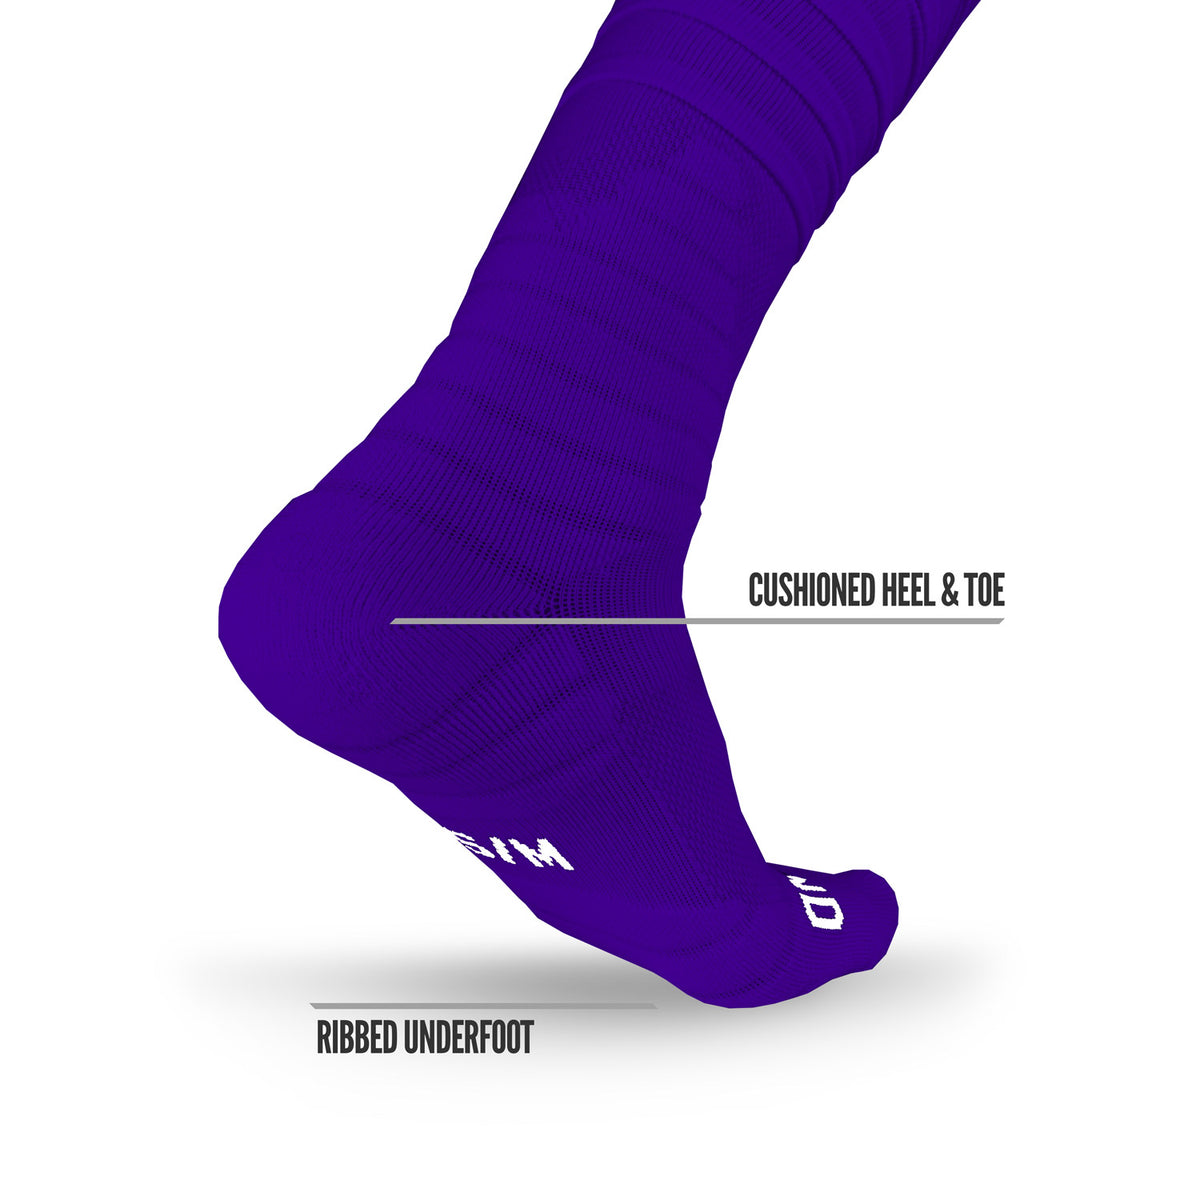 Purple Fuzzy Knobby Socks